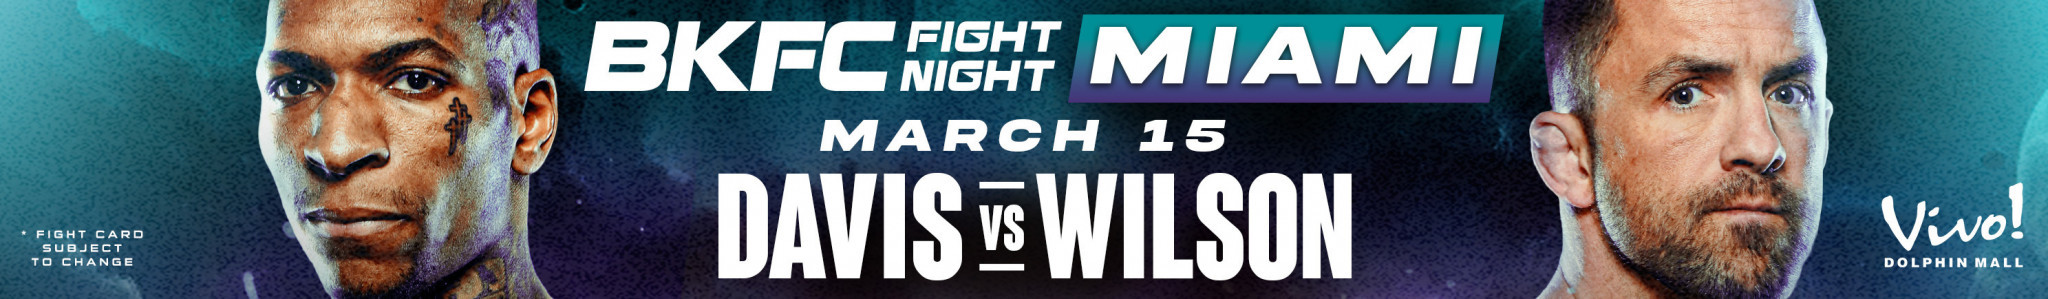 Davis vs. Wilson in Miami, on the 15th of February in Miami. BKFC